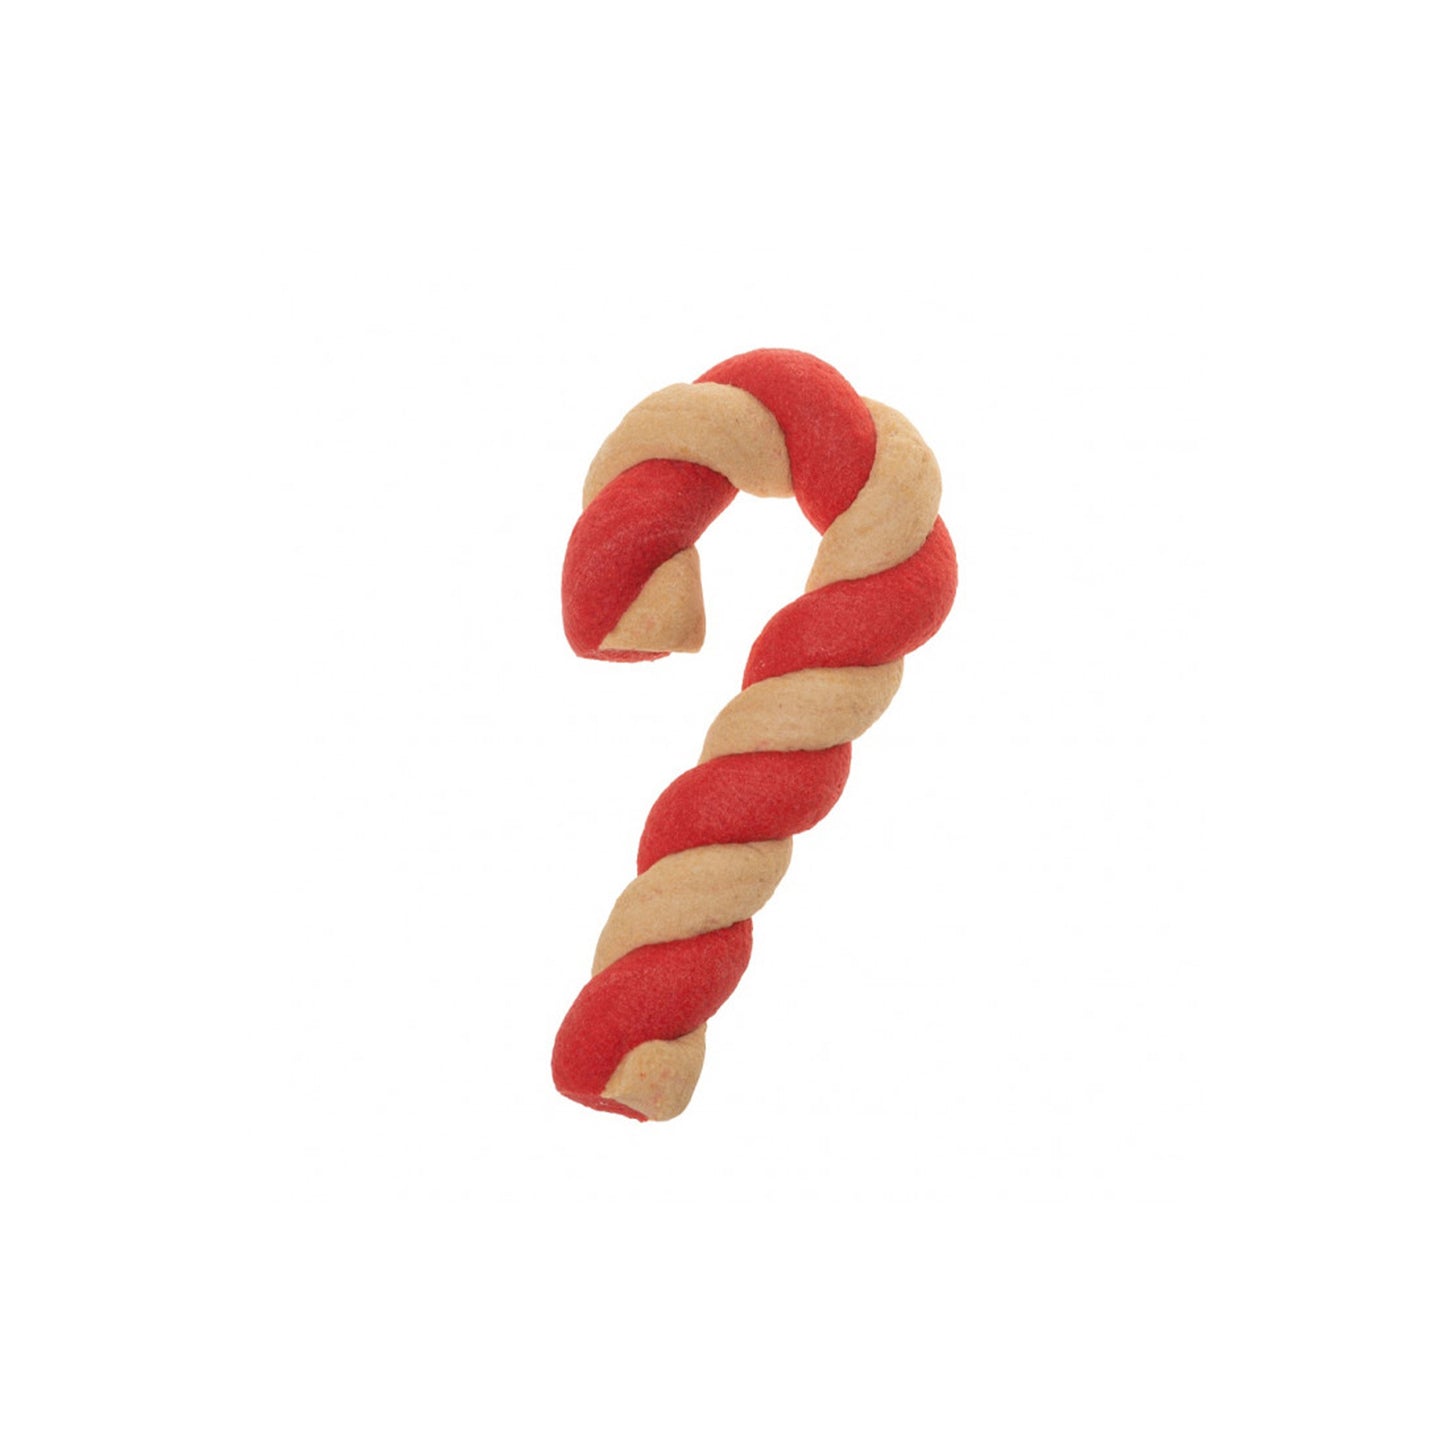 Biscotto Natalizio “Candy Stick”